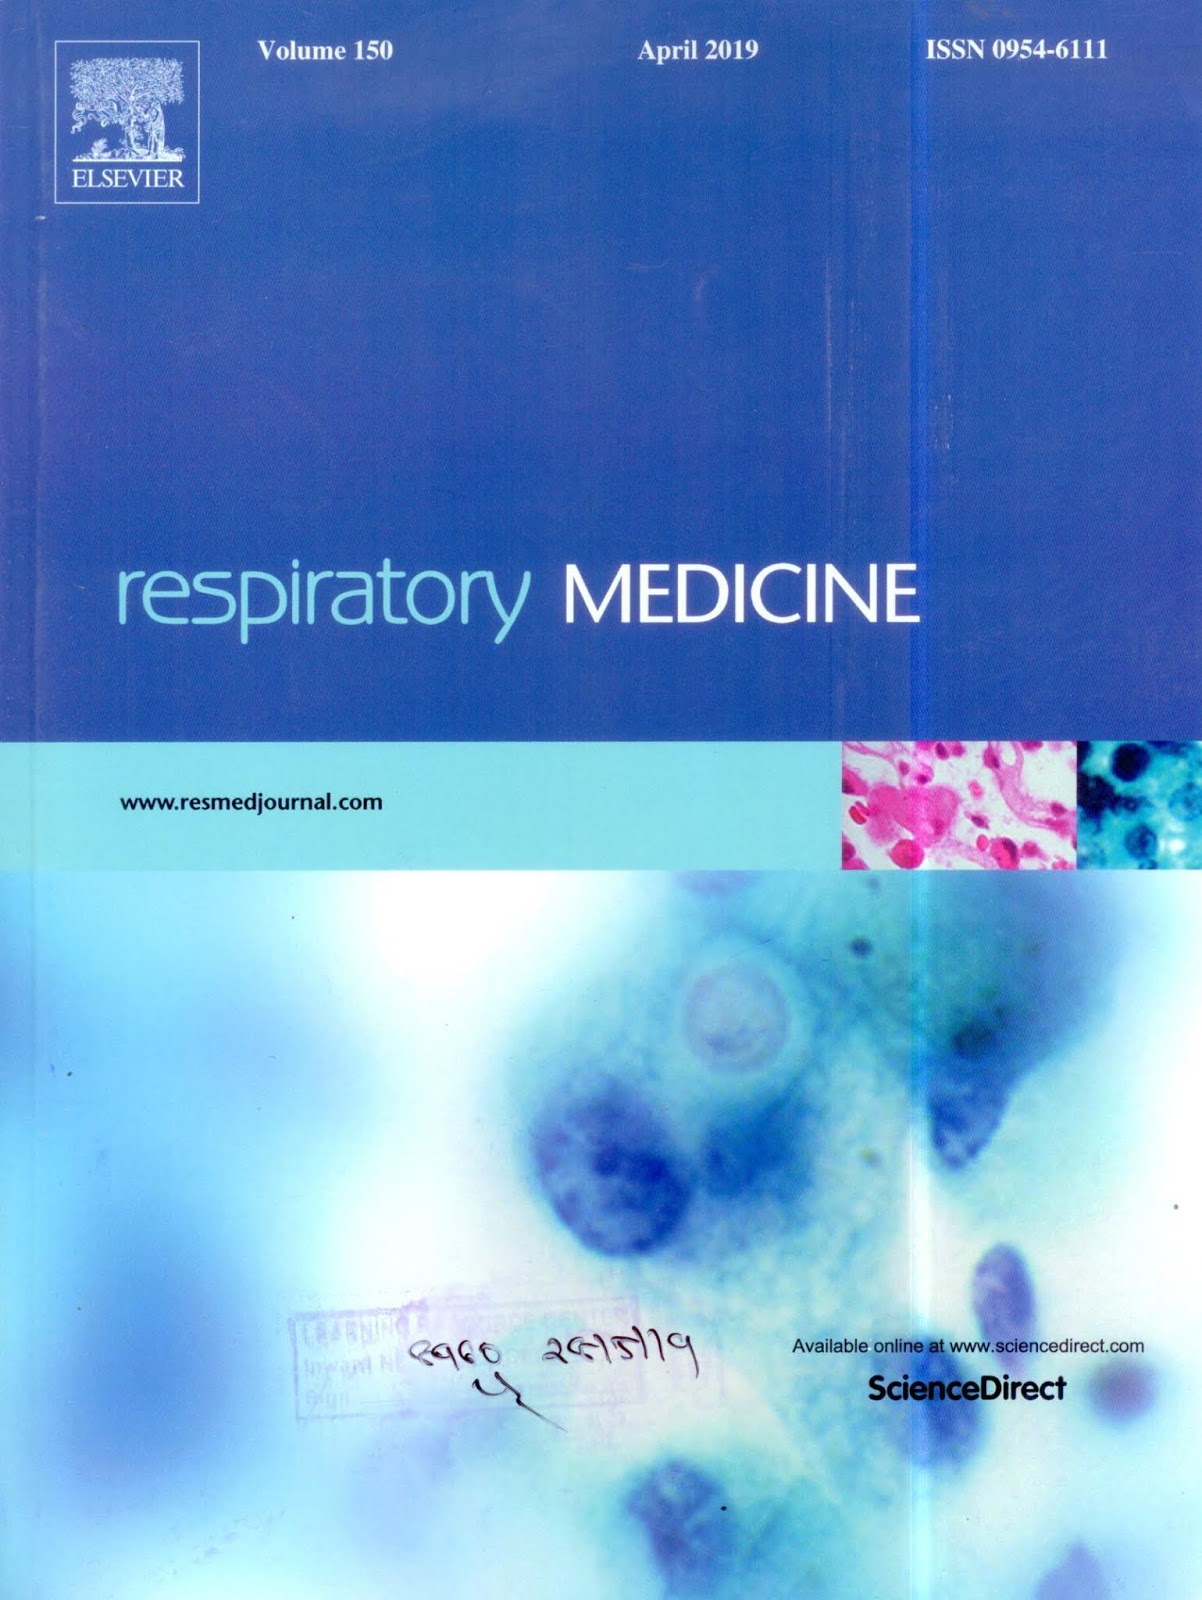 https://www.sciencedirect.com/journal/respiratory-medicine/vol/150/suppl/C